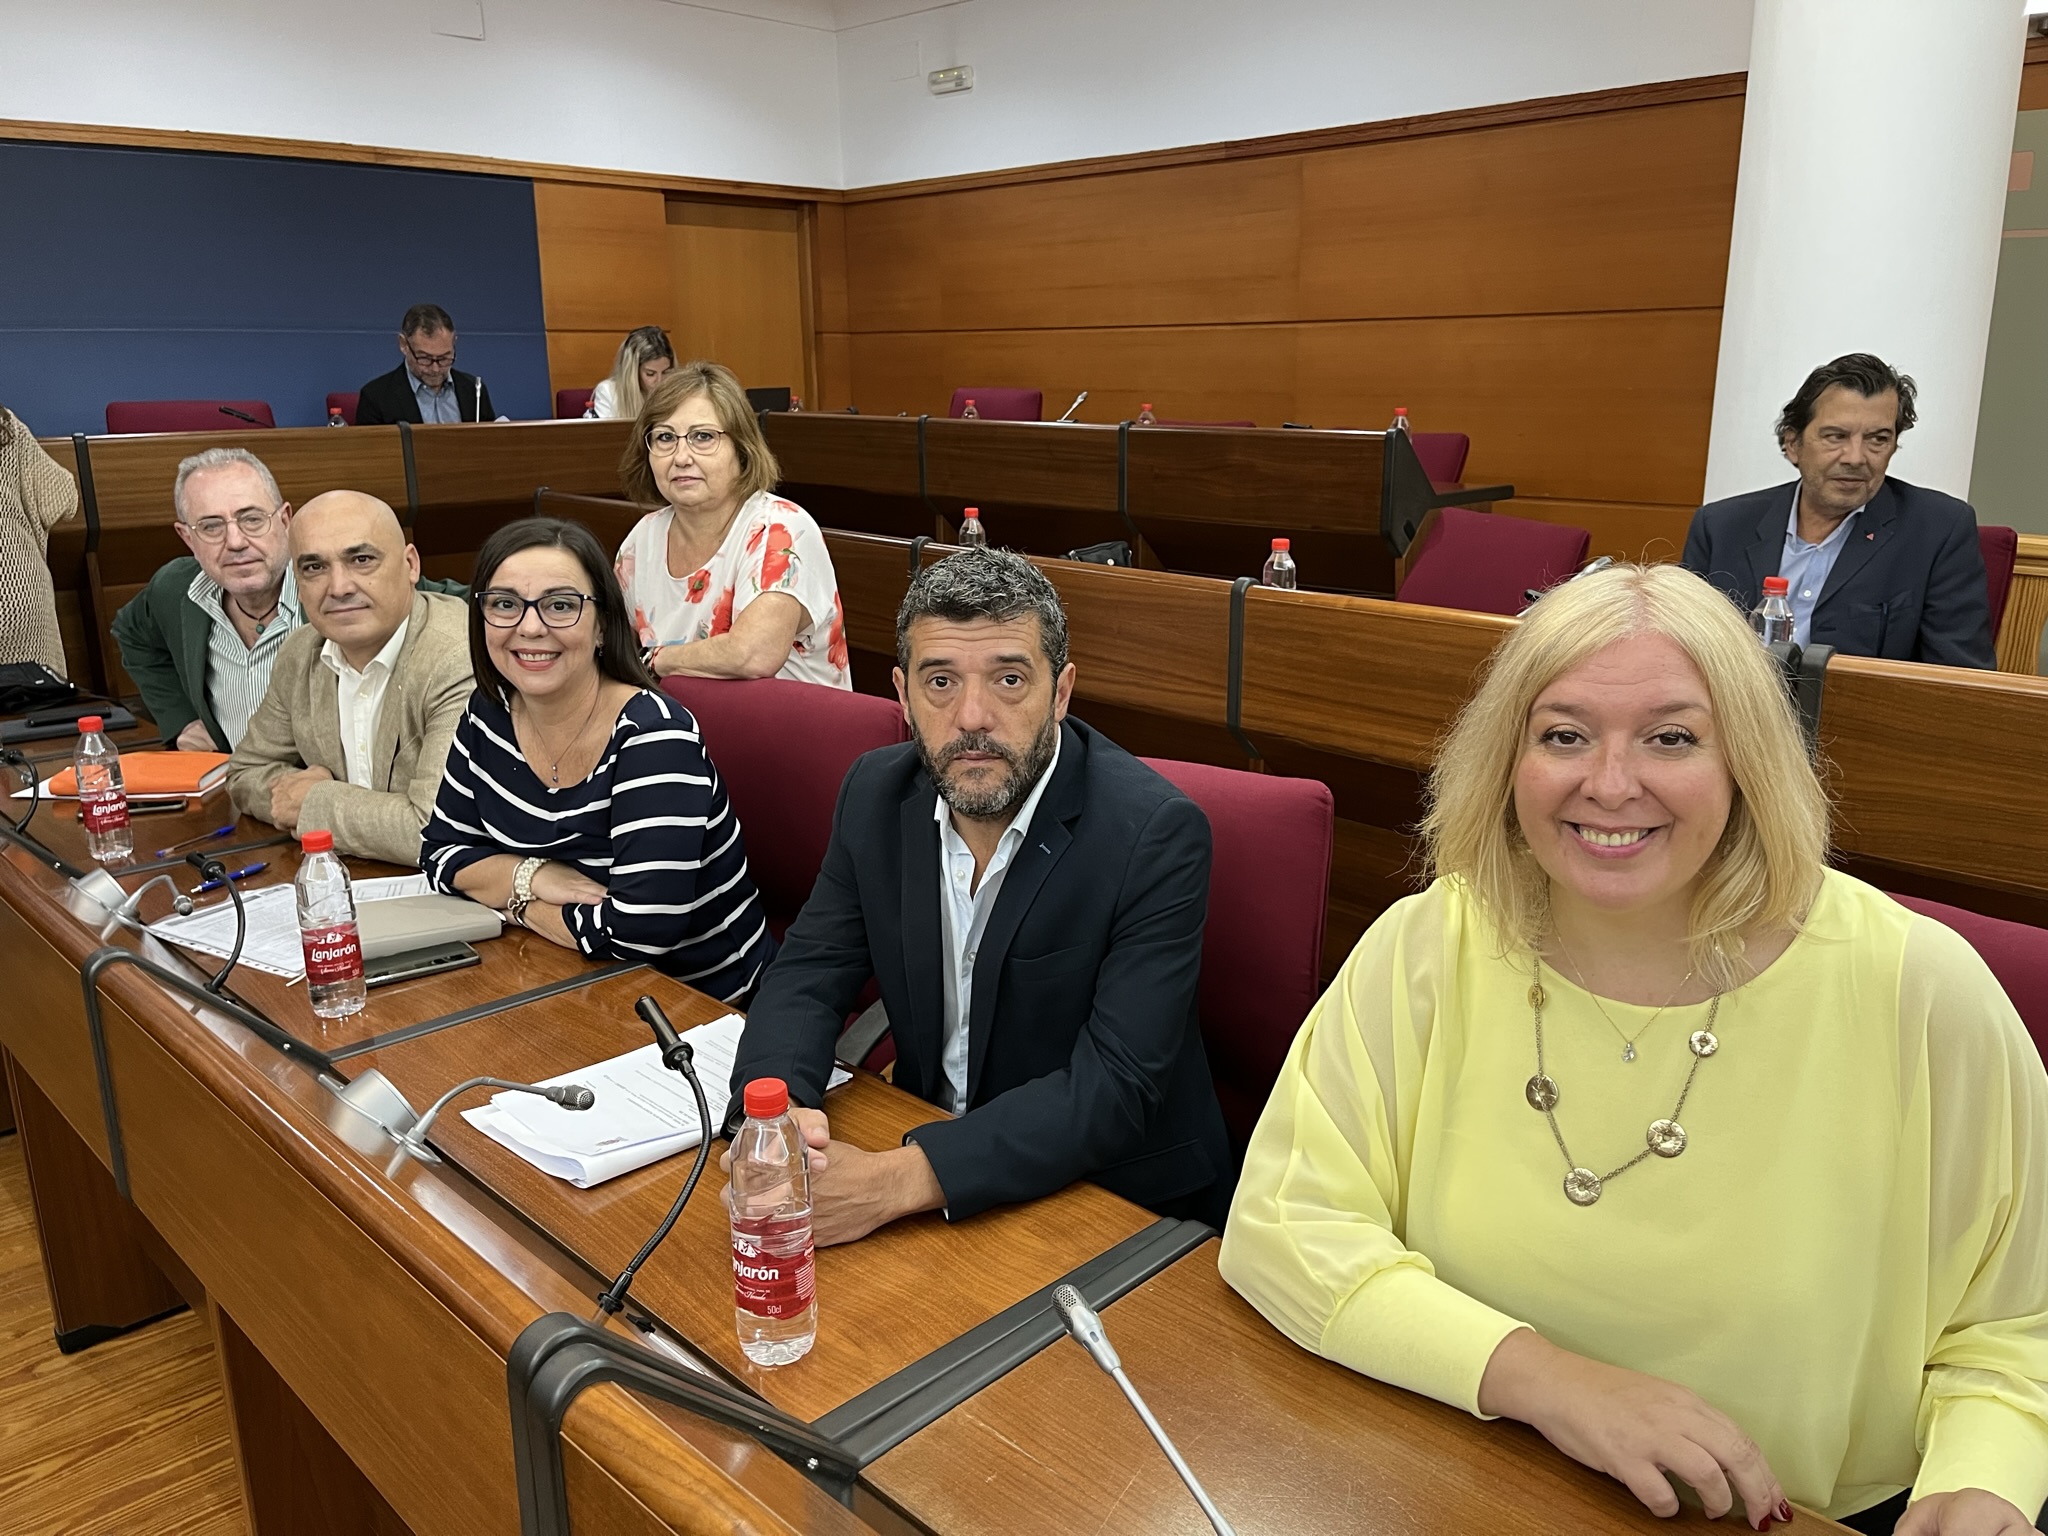 El Pleno aprueba por unanimidad las mociones del PSOE para mejorar el acceso y la limpieza del Cementerio y para reparar el techo y garantizar la accesibilidad en el Colegio Príncipe Felipe